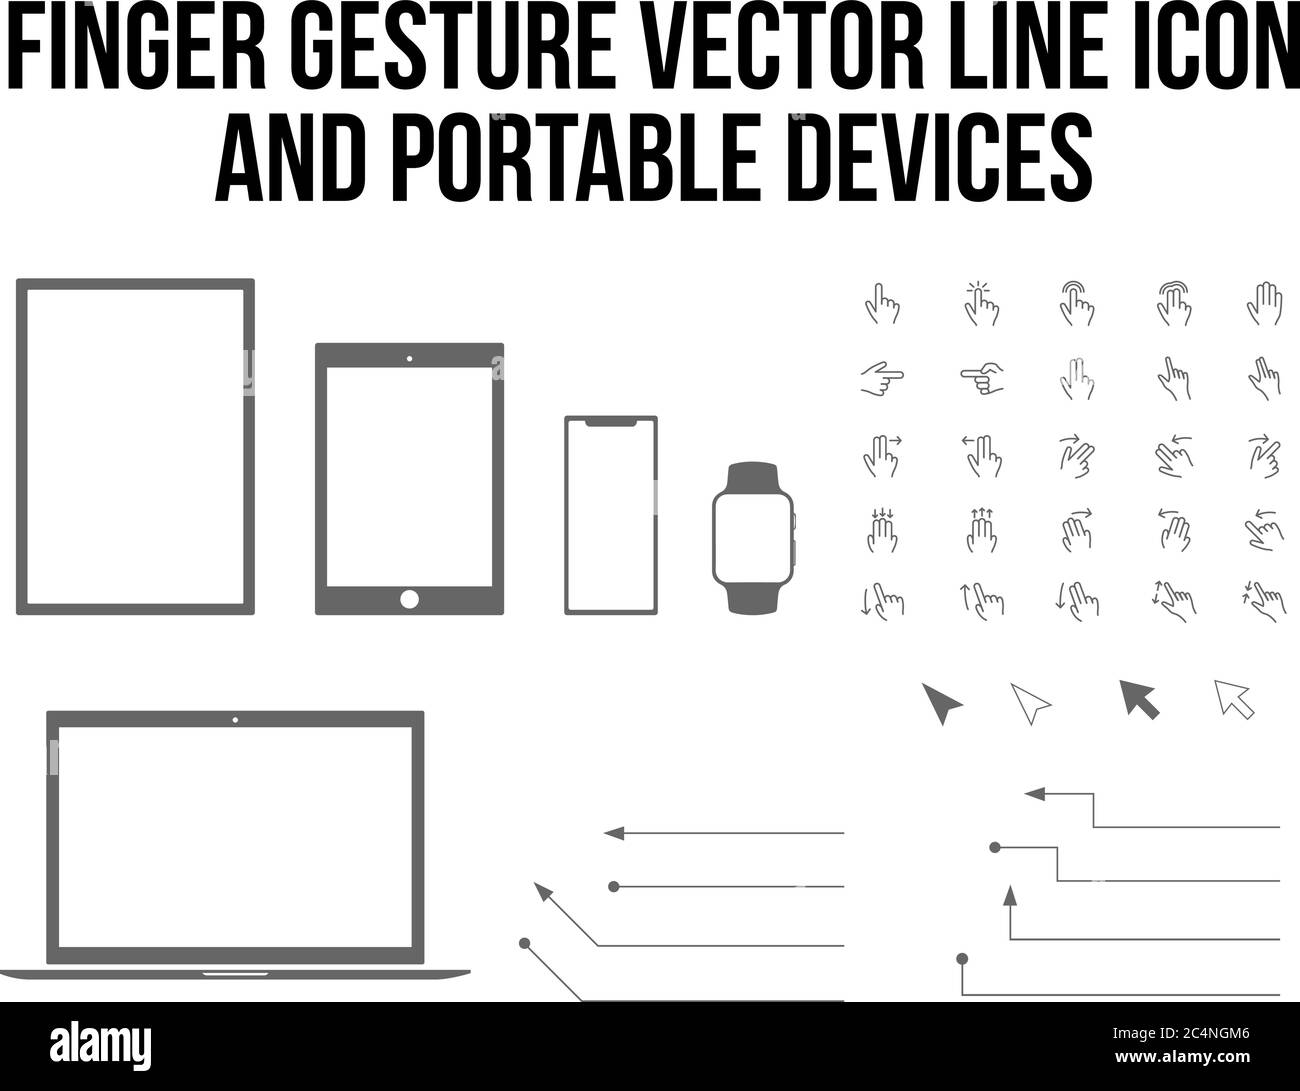 Le vecteur de doigt tactile et mobile, tablette, ordinateur portable, ordinateur de bureau gadget plat ensemble d'icônes Illustration de Vecteur